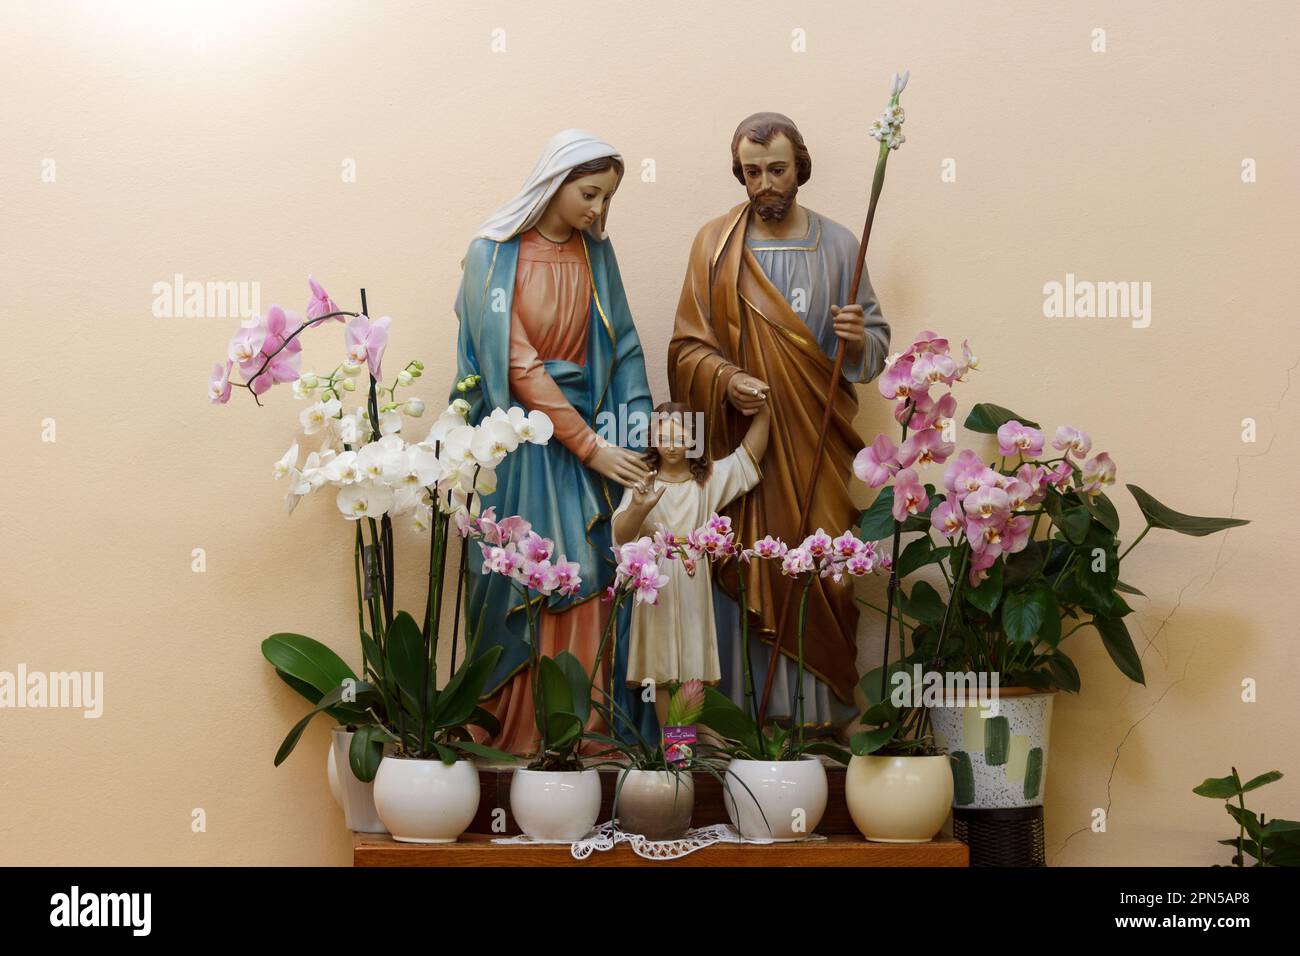 La statue de la Sainte famille - Jésus, Marie et Joseph dans la chapelle d'adoration à Medjugorje, Bosnie-Herzégovine. Banque D'Images